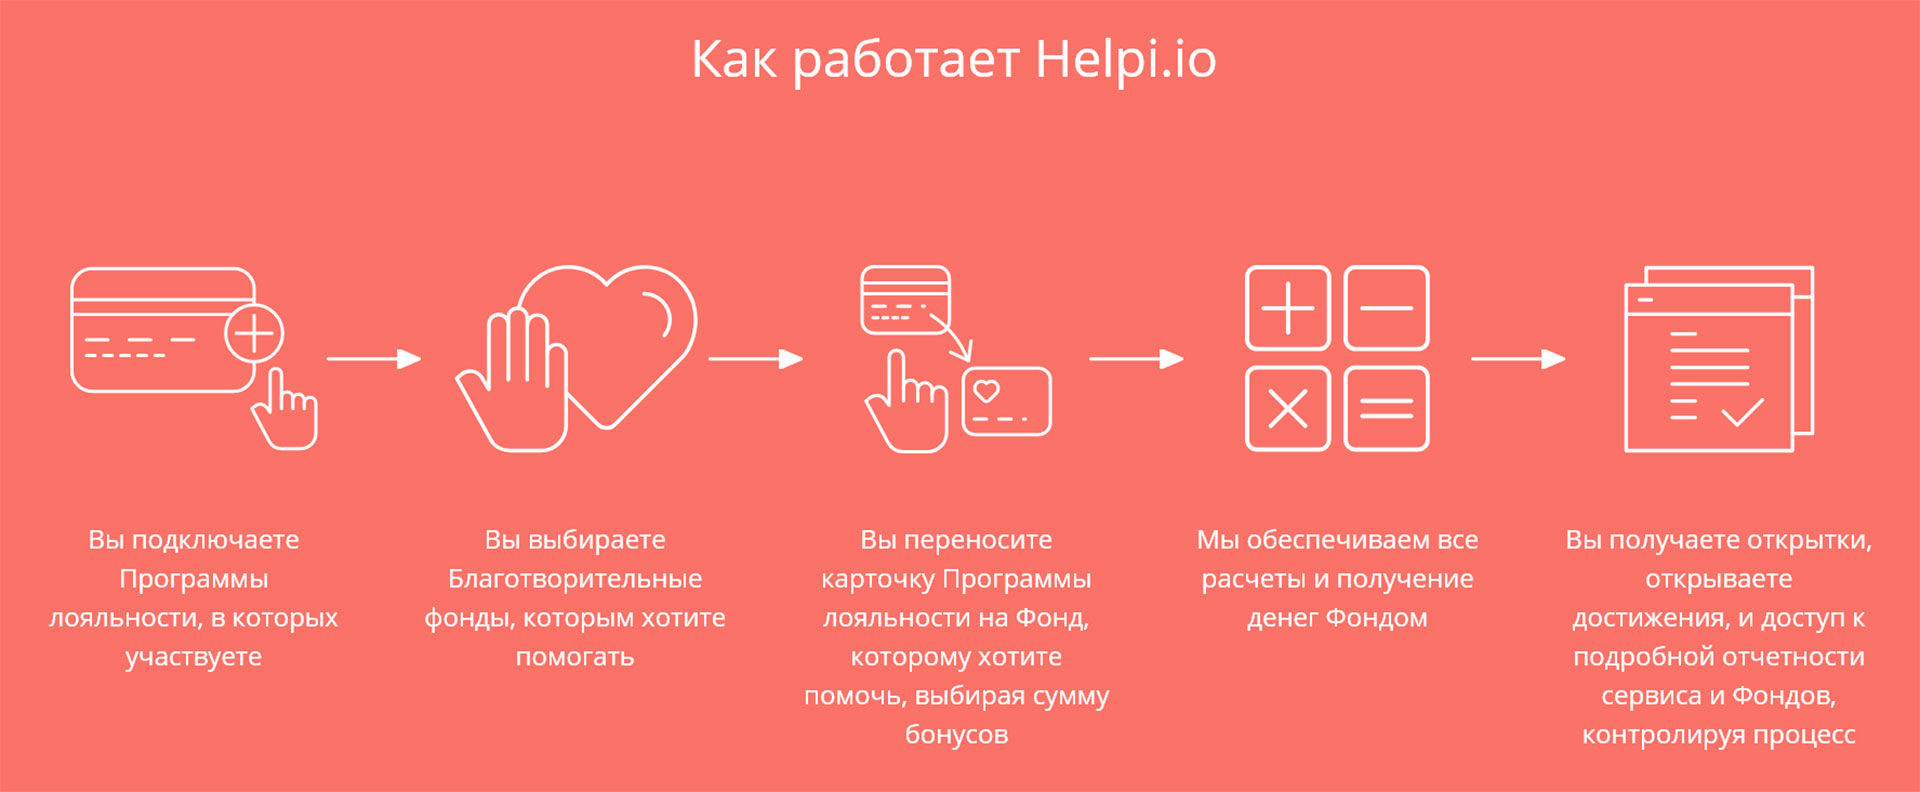 Для клиентов взаимодействие с Helpi.io состоит из пяти простых шагов